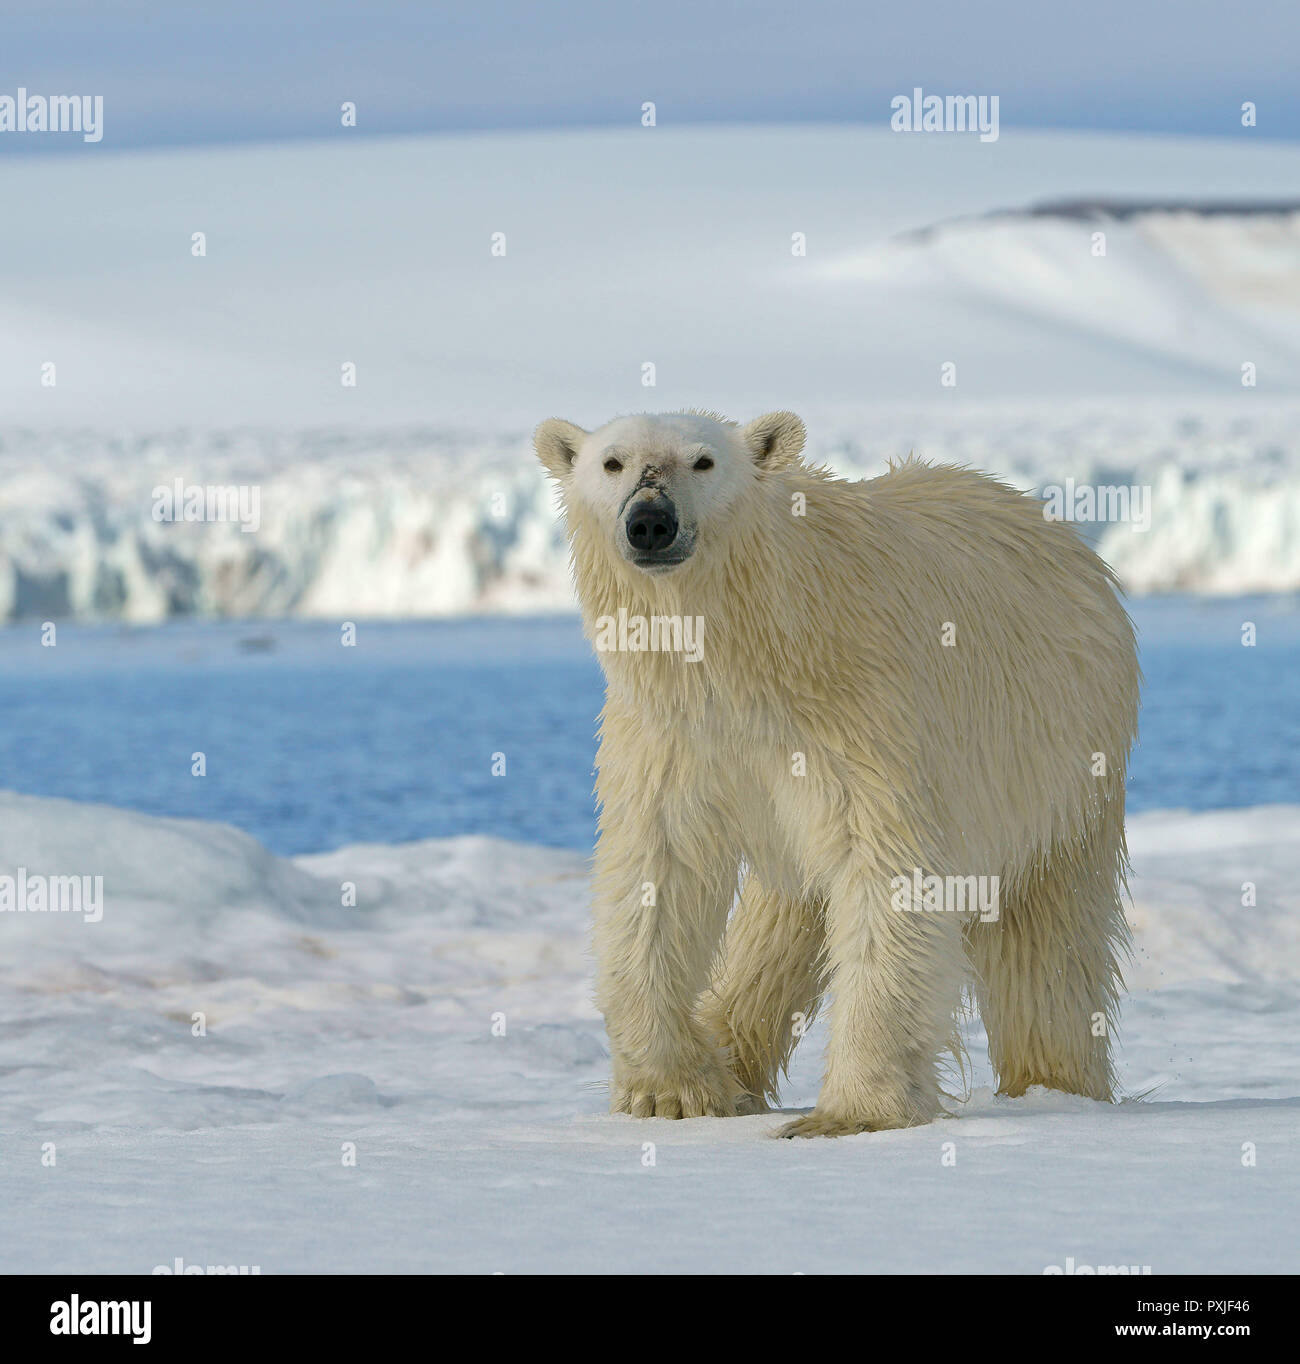 Eisbär (Ursus maritimus) läuft auf dem Eis, in der norwegischen Arktis Svalbard, Norwegen Stockfoto